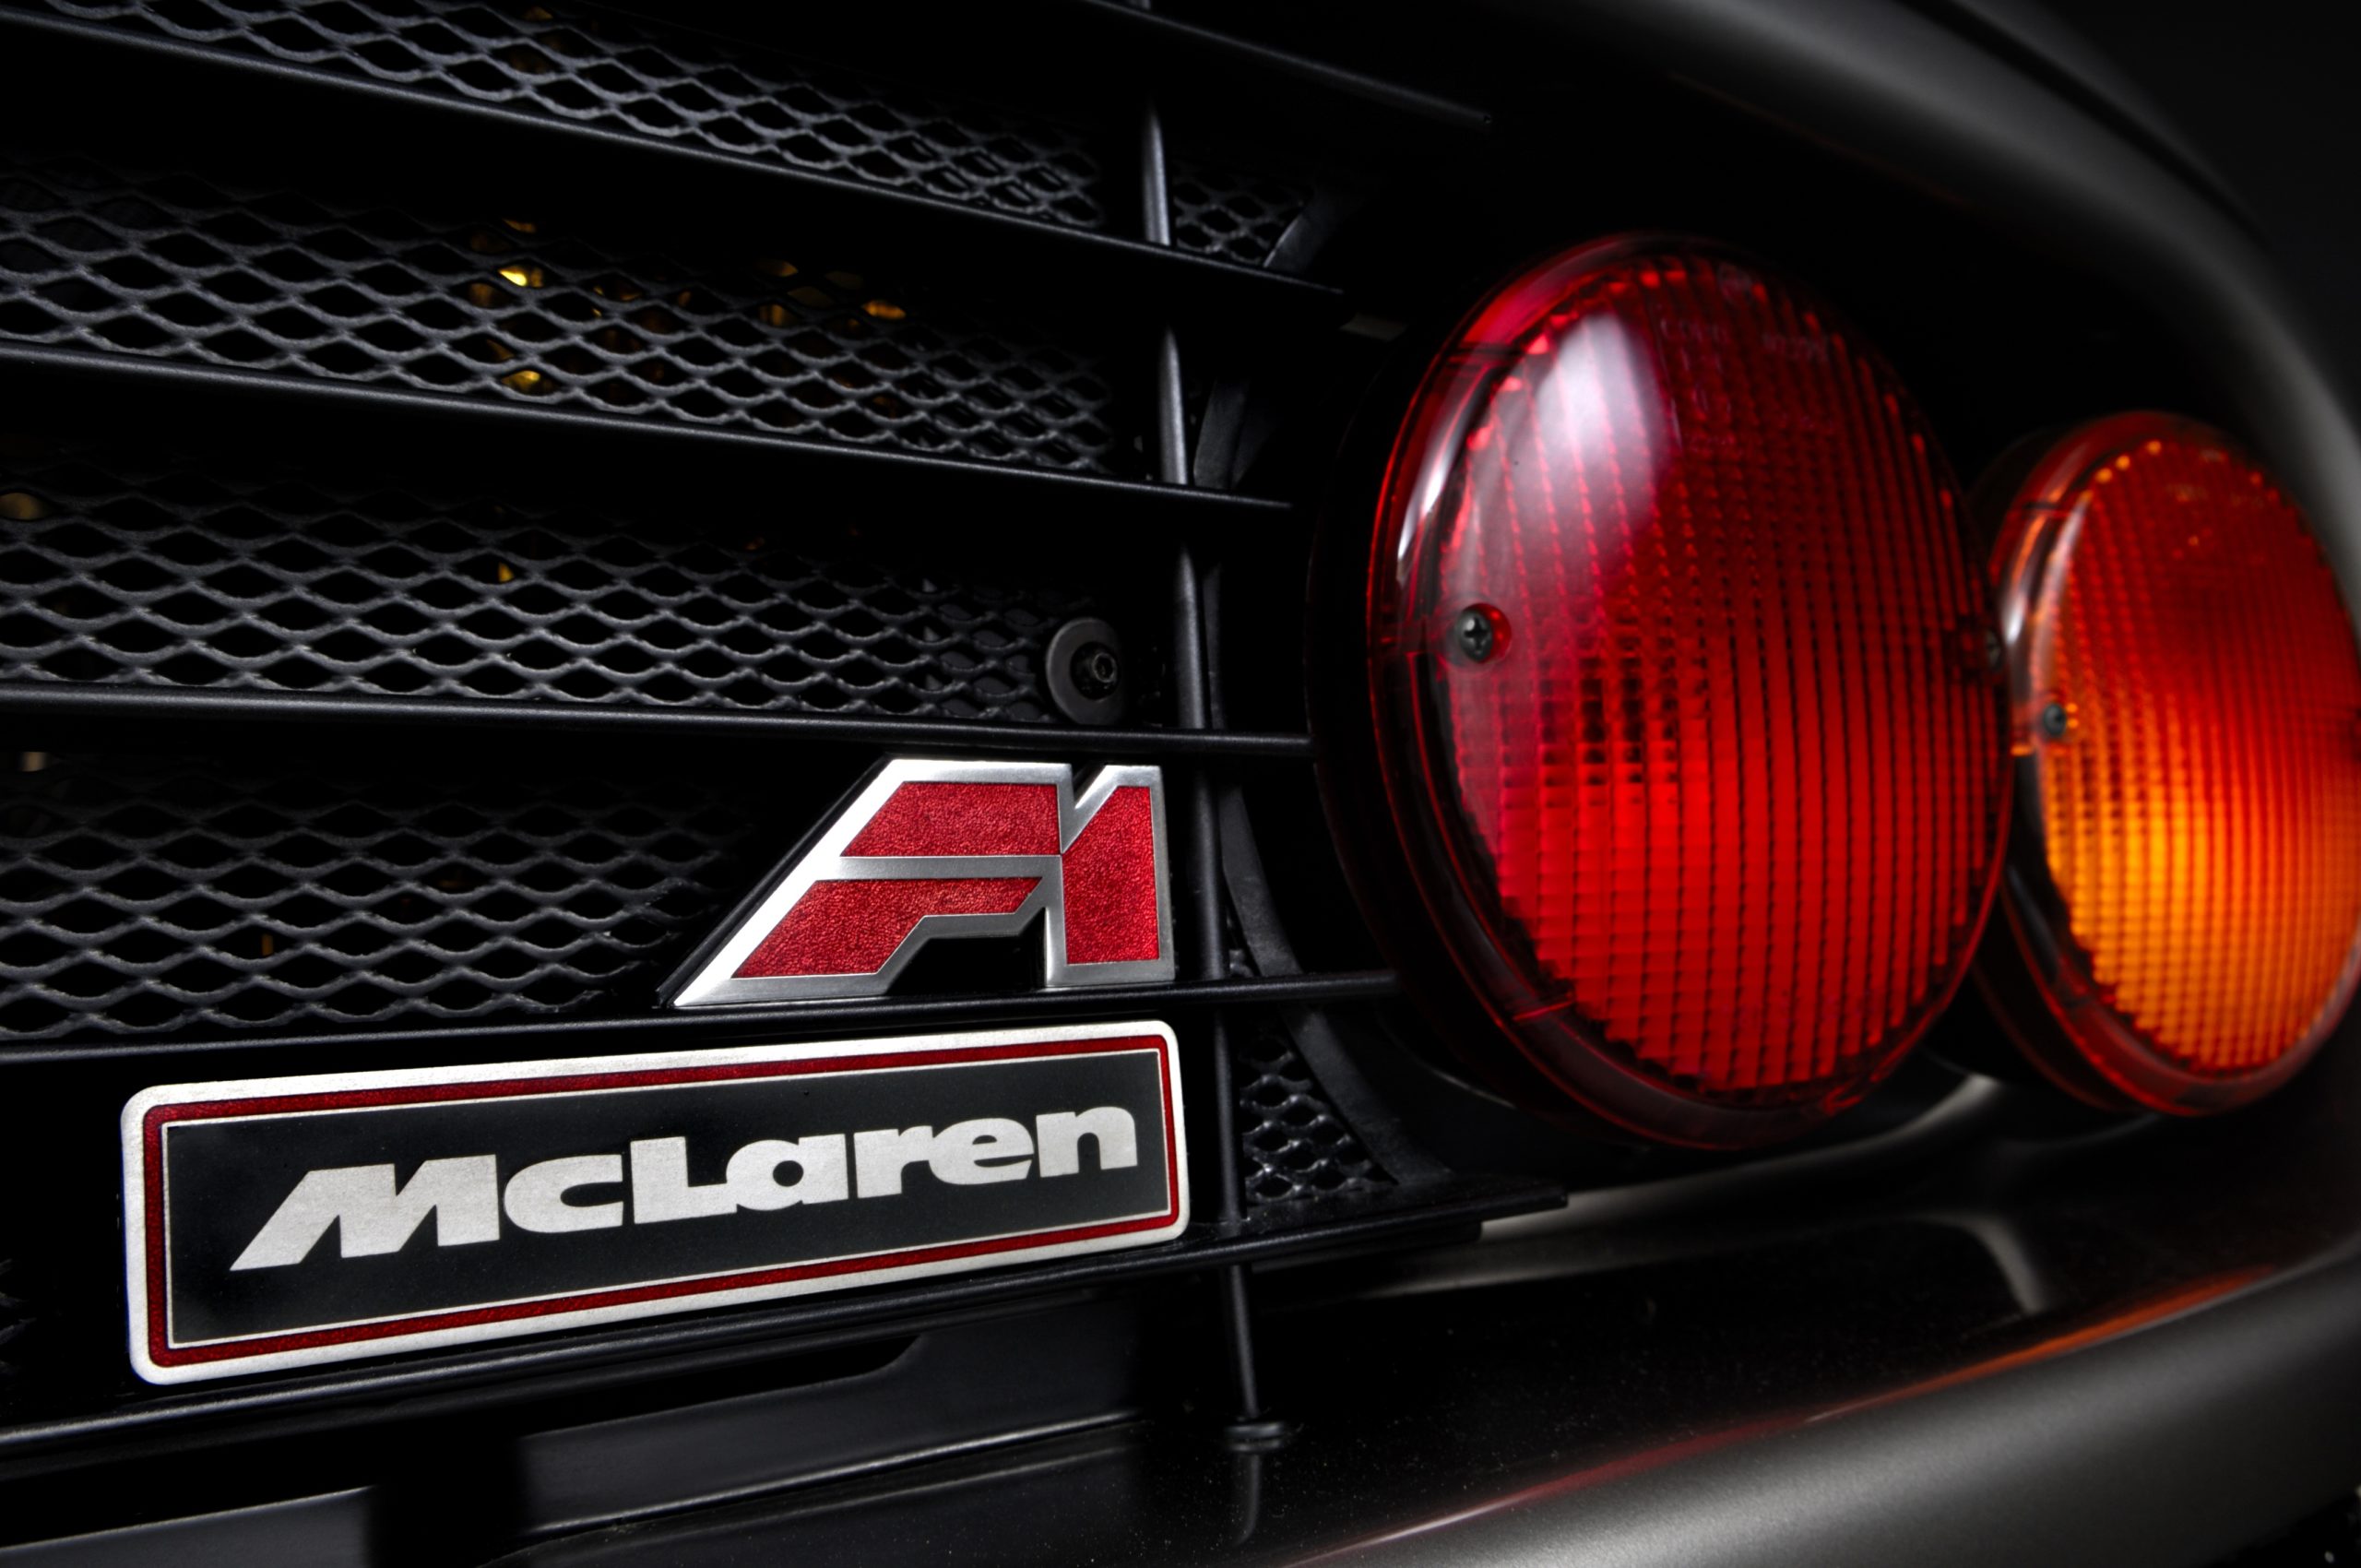 McLaren F1 valued at 16m